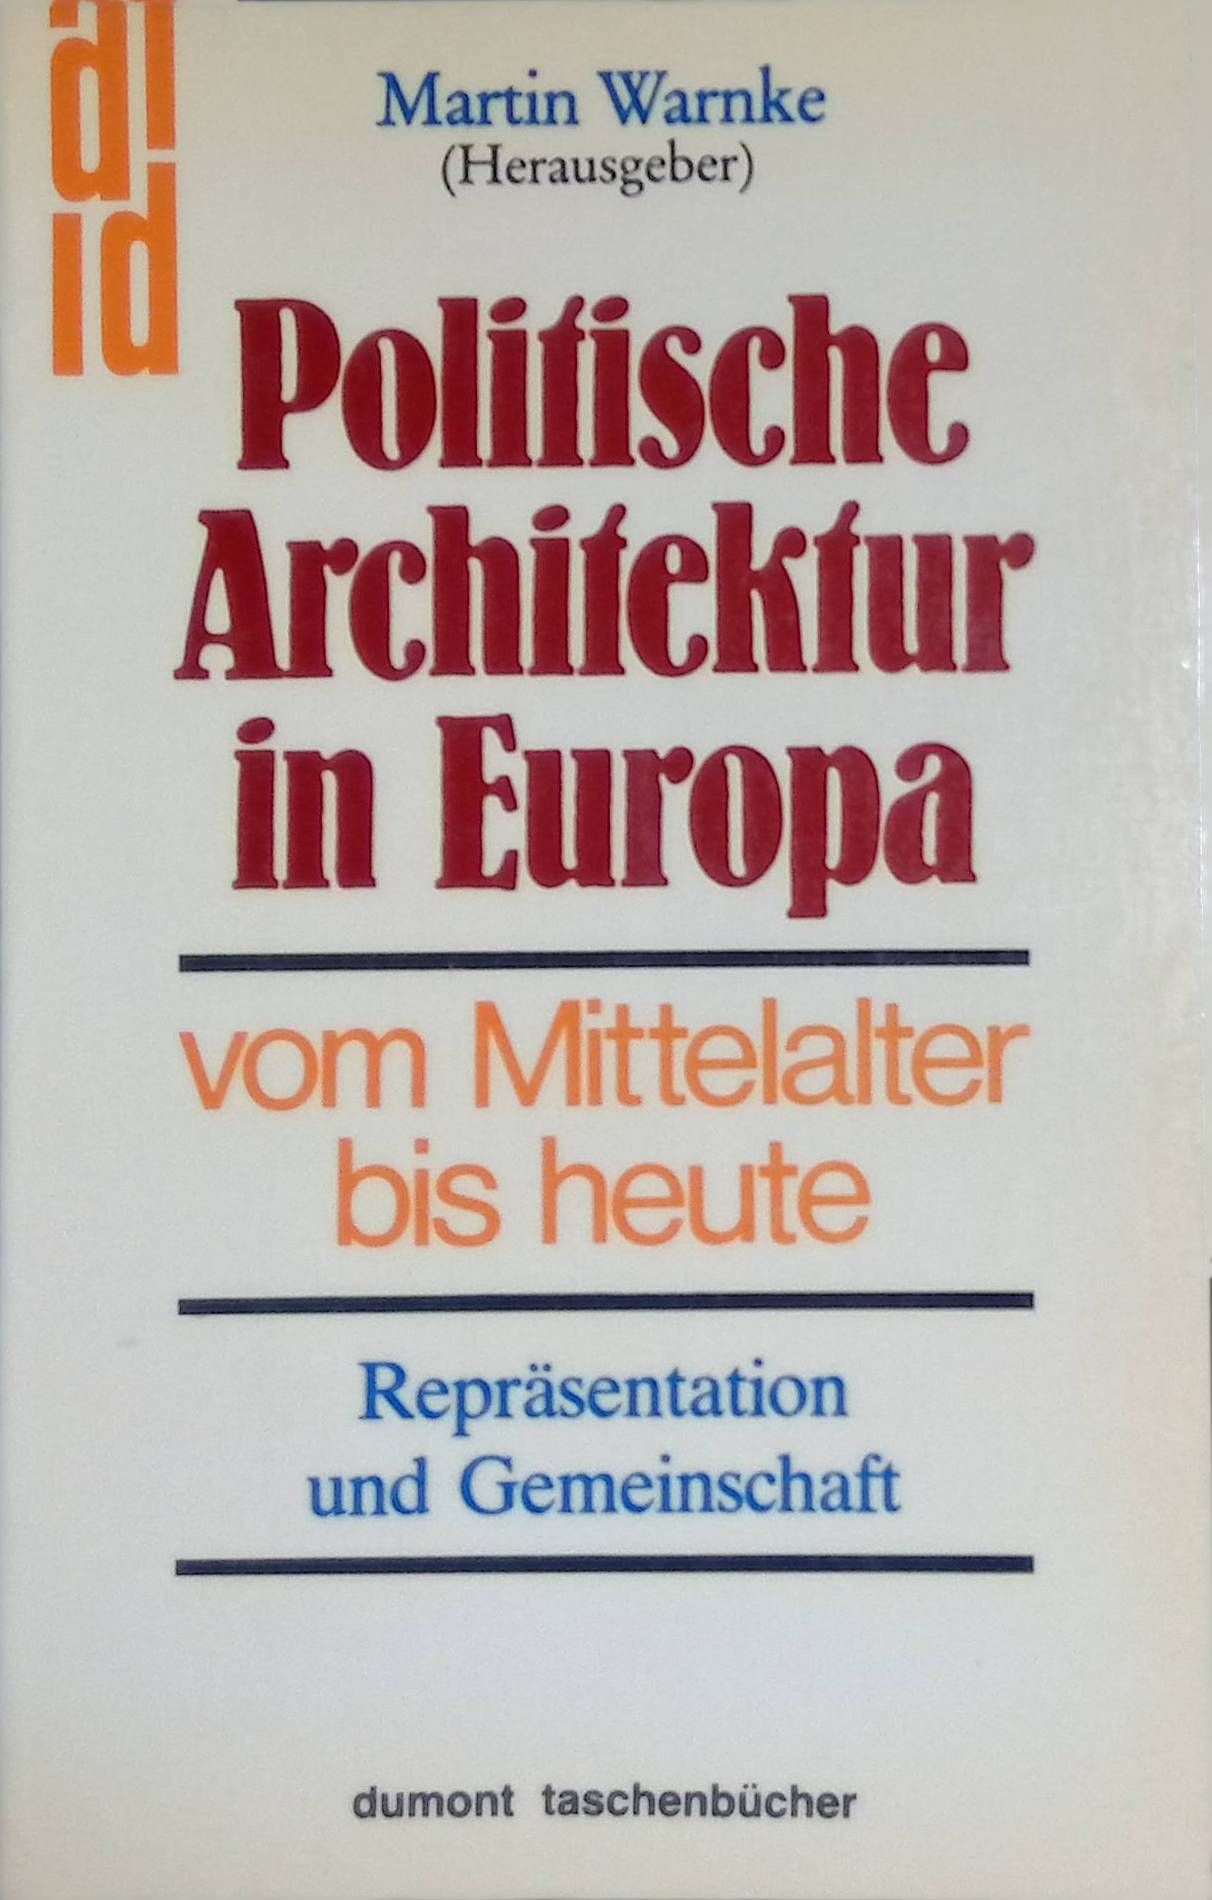 Politsche Architektur in Europa. Vom Mittelalter bis heute - Repräsentation und Gemeinschaft. (Nr 143) - Warnke, Martin